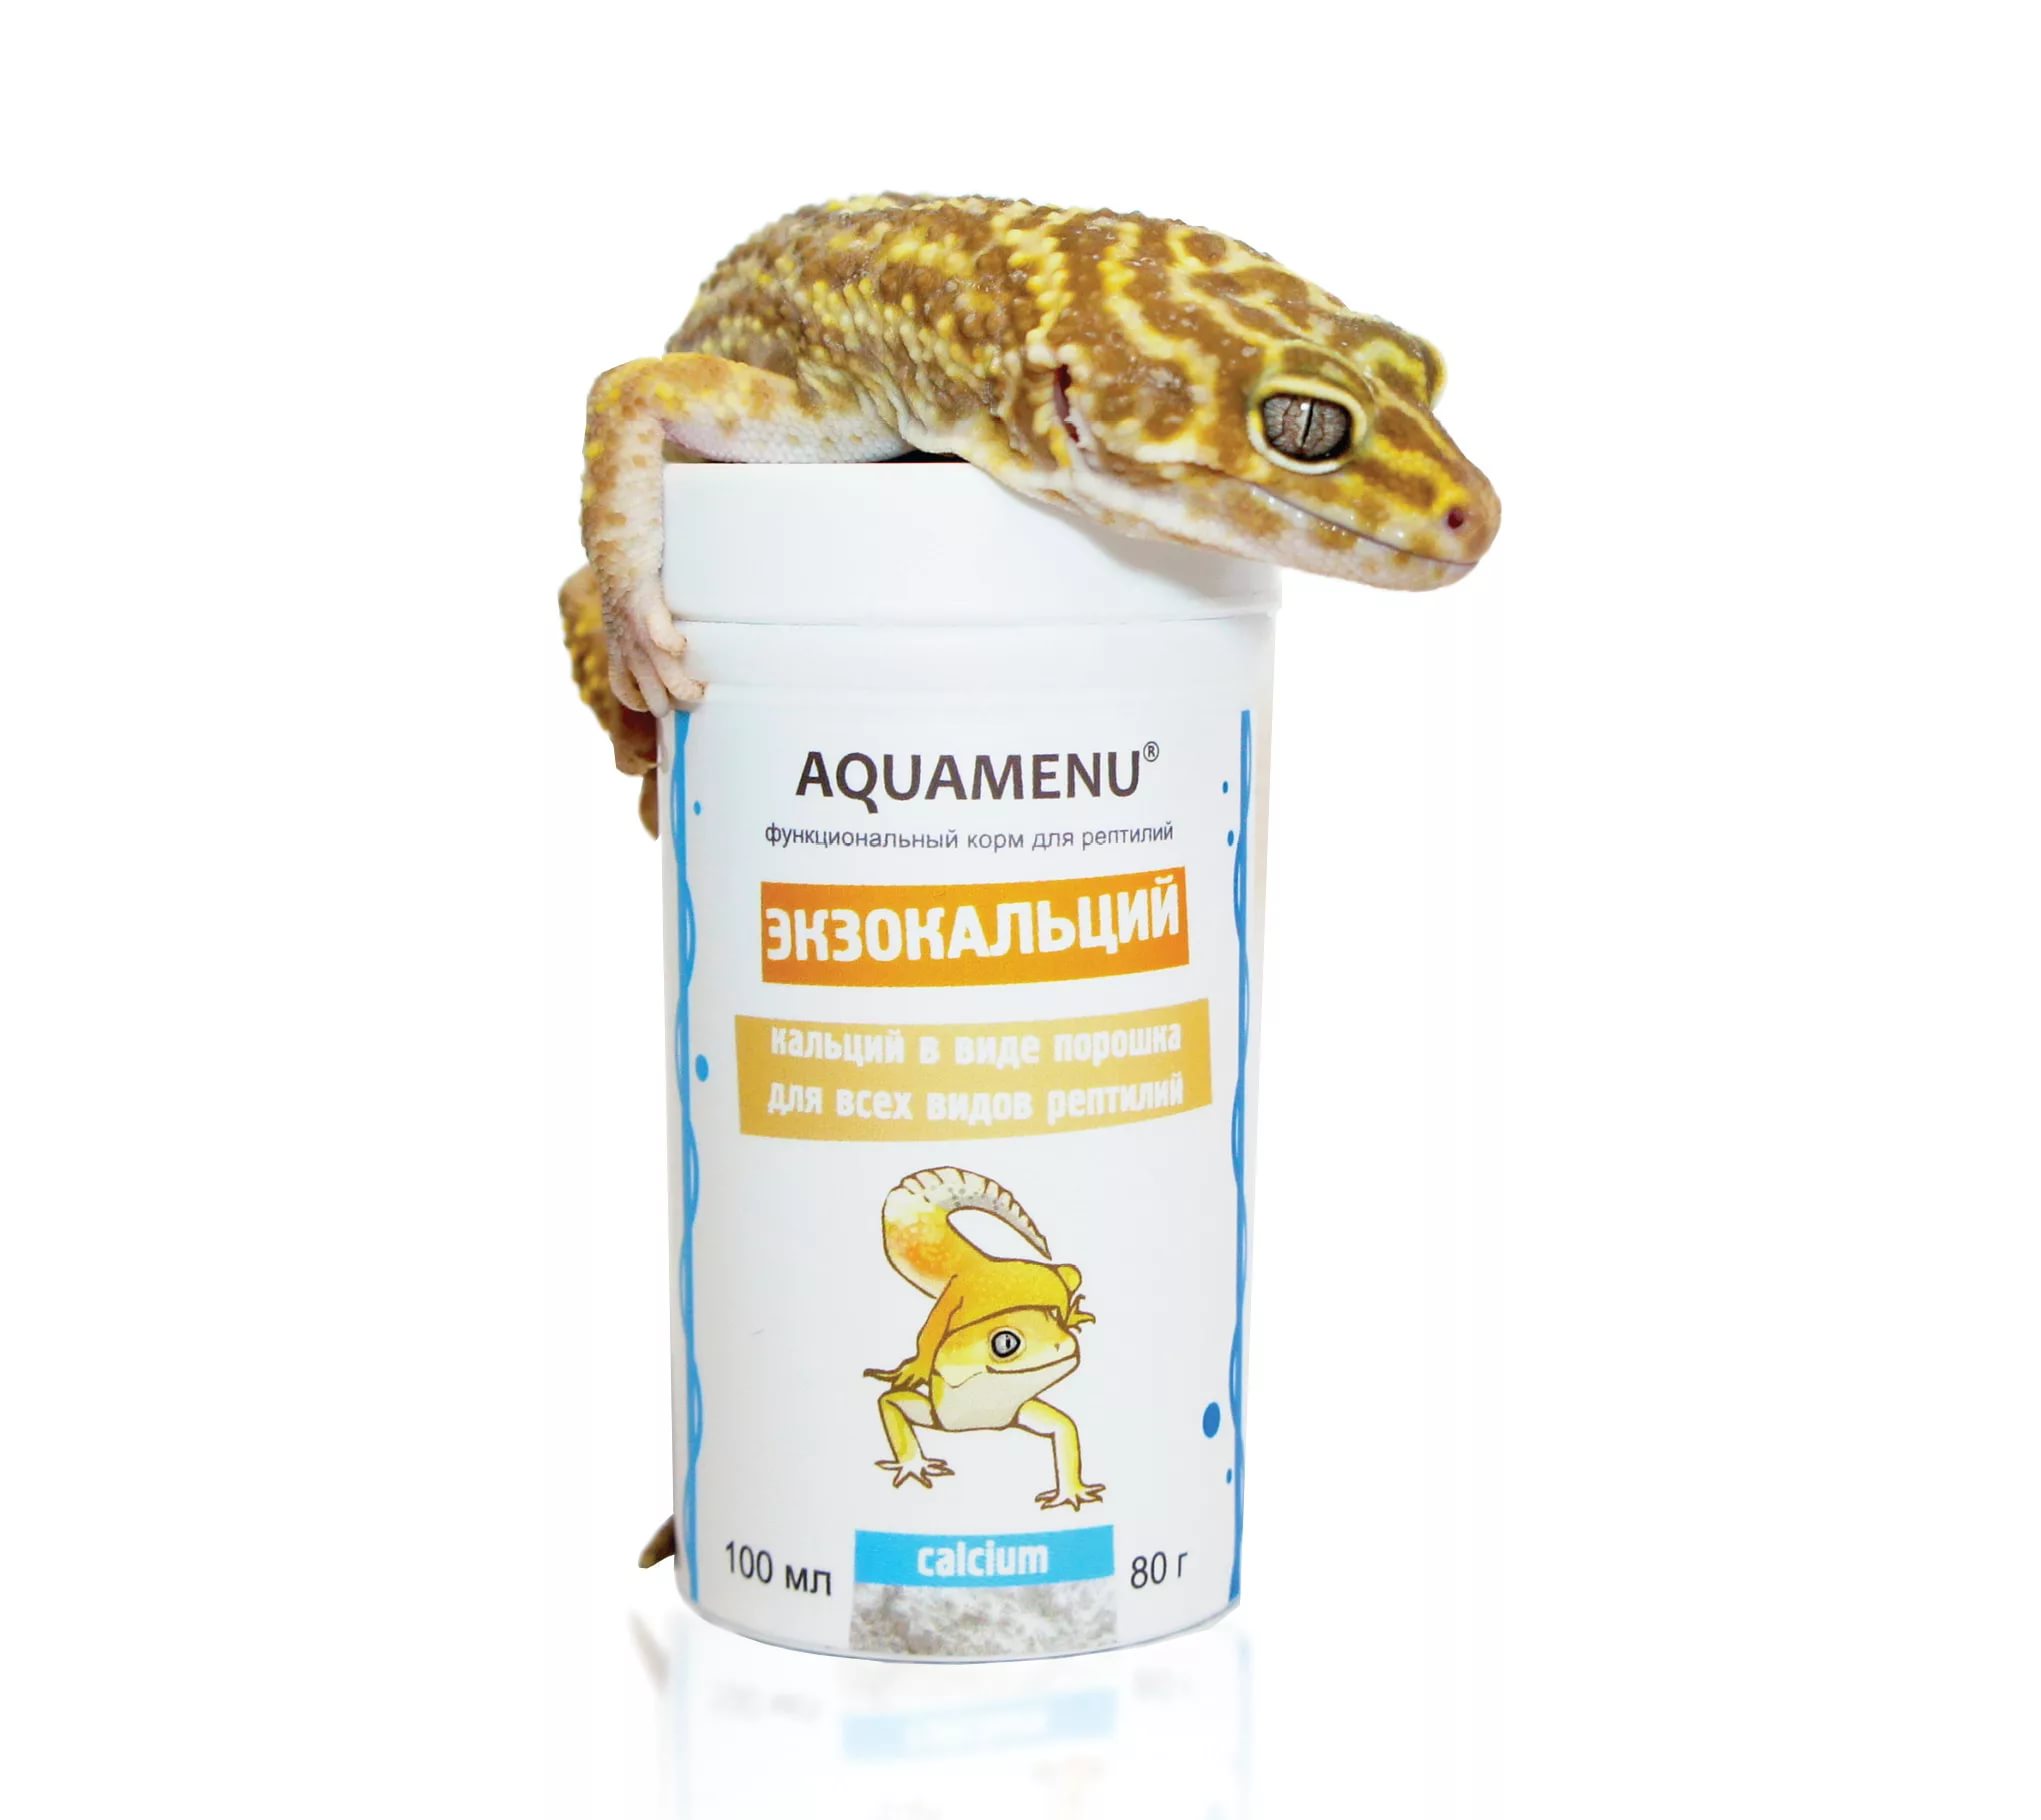 Экзокальций 600 мл. (500 гр.) – функциональный корм для всех видов рептилий, способствует развитию к, AQUAMENU